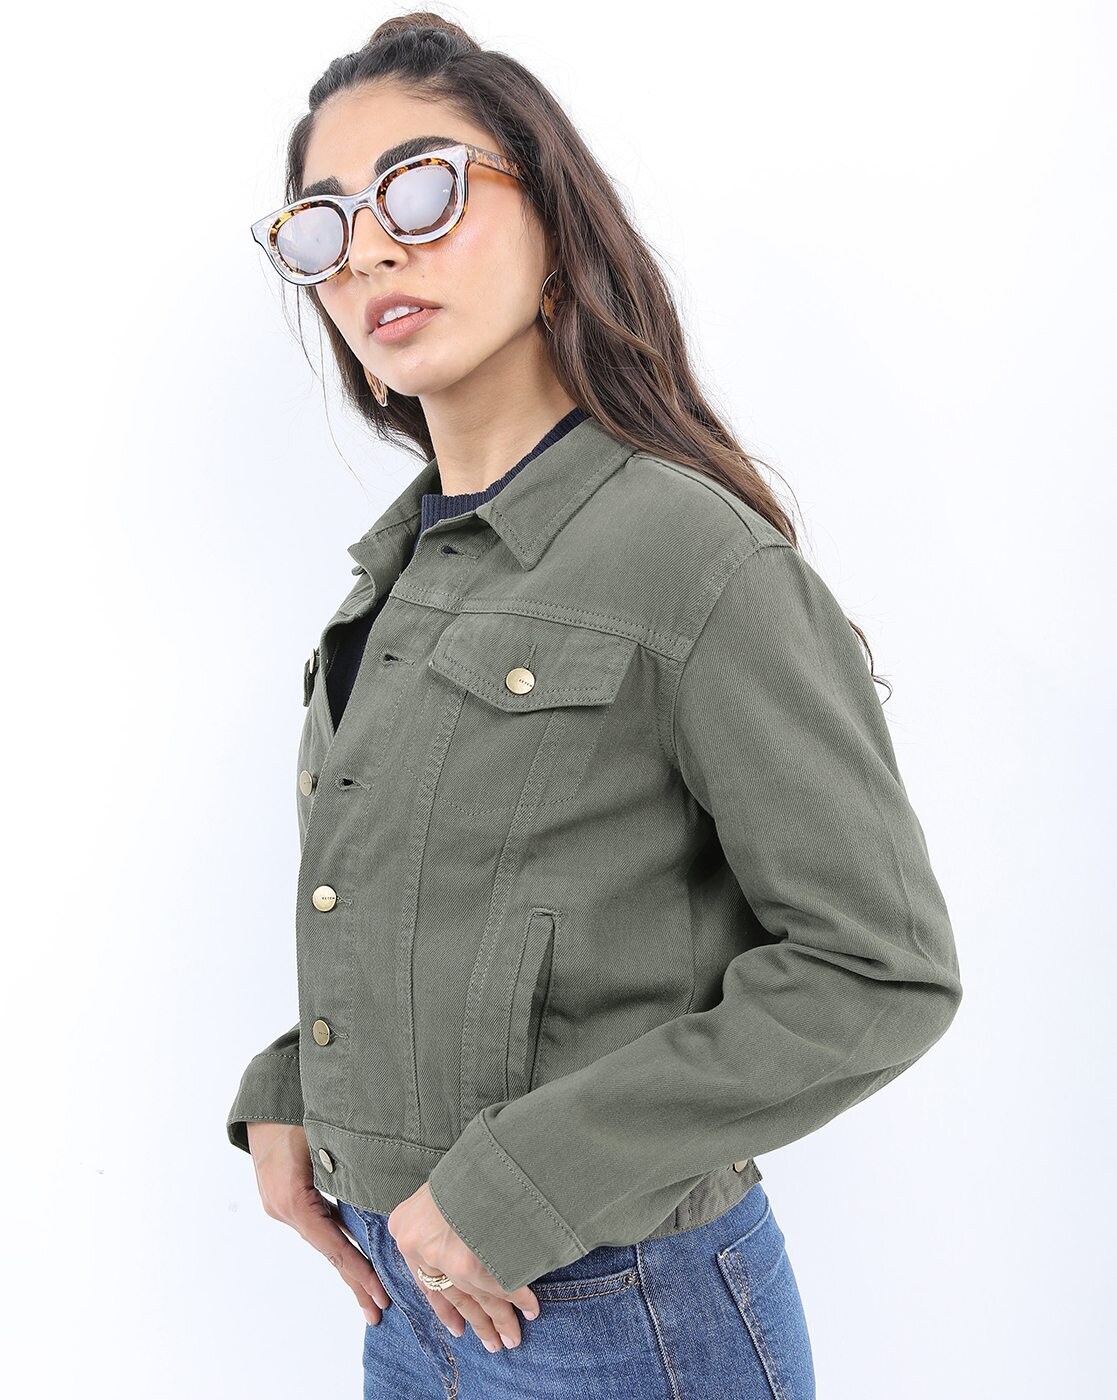 Buy Stnemrag Full Sleeve Solid Women Denim Jacket green jacket  M For  Women Girls Pack Of 1 at Amazonin